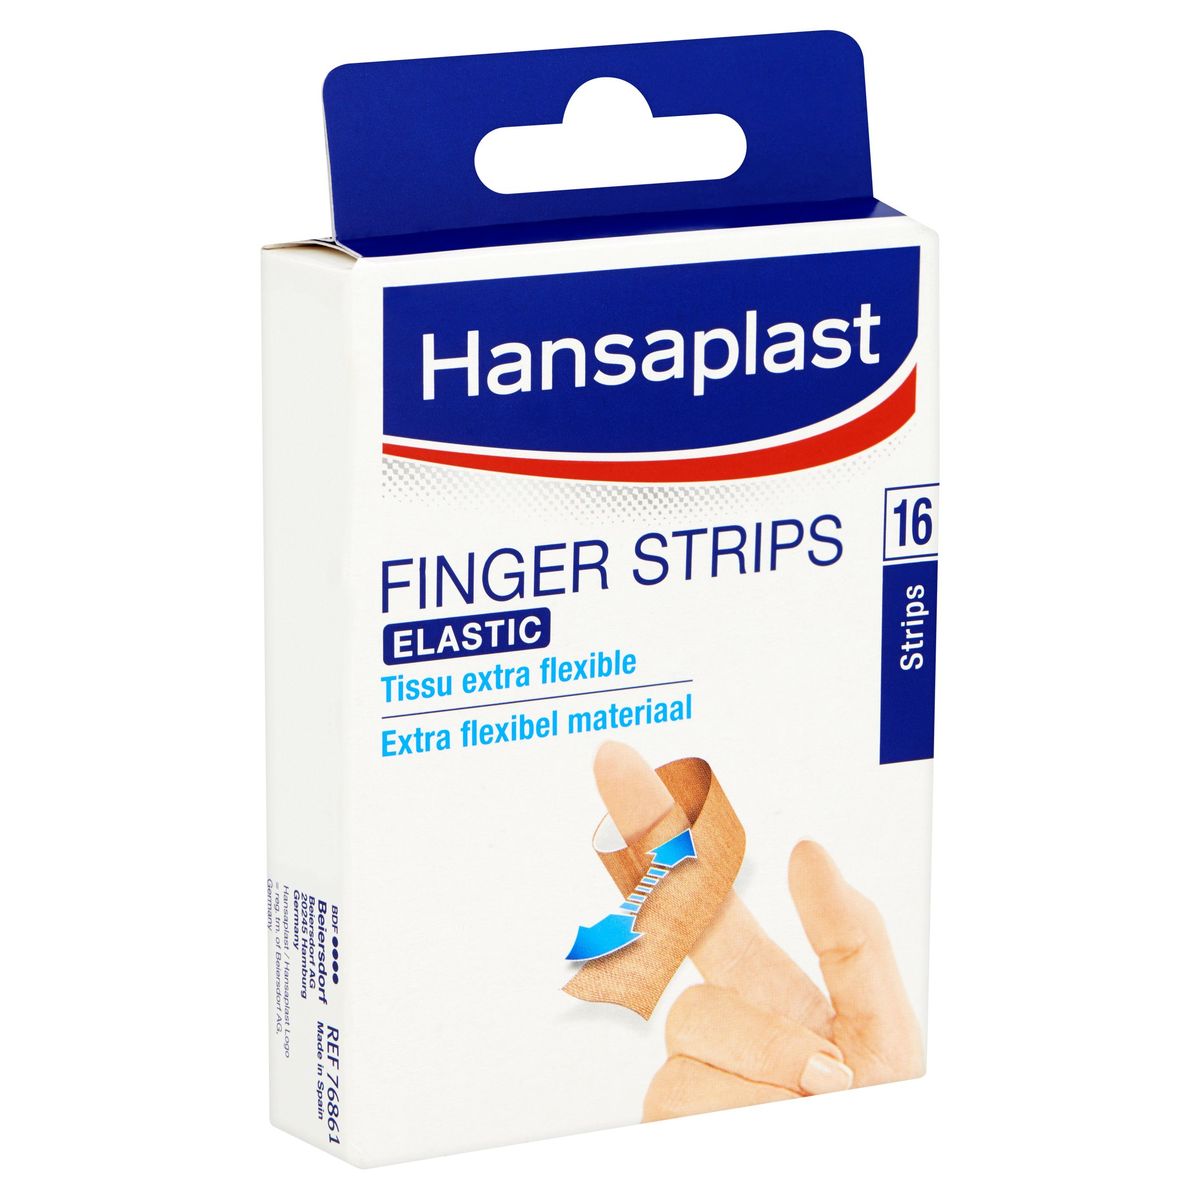 Hansaplast Finger Strips Elastic 16 Strips